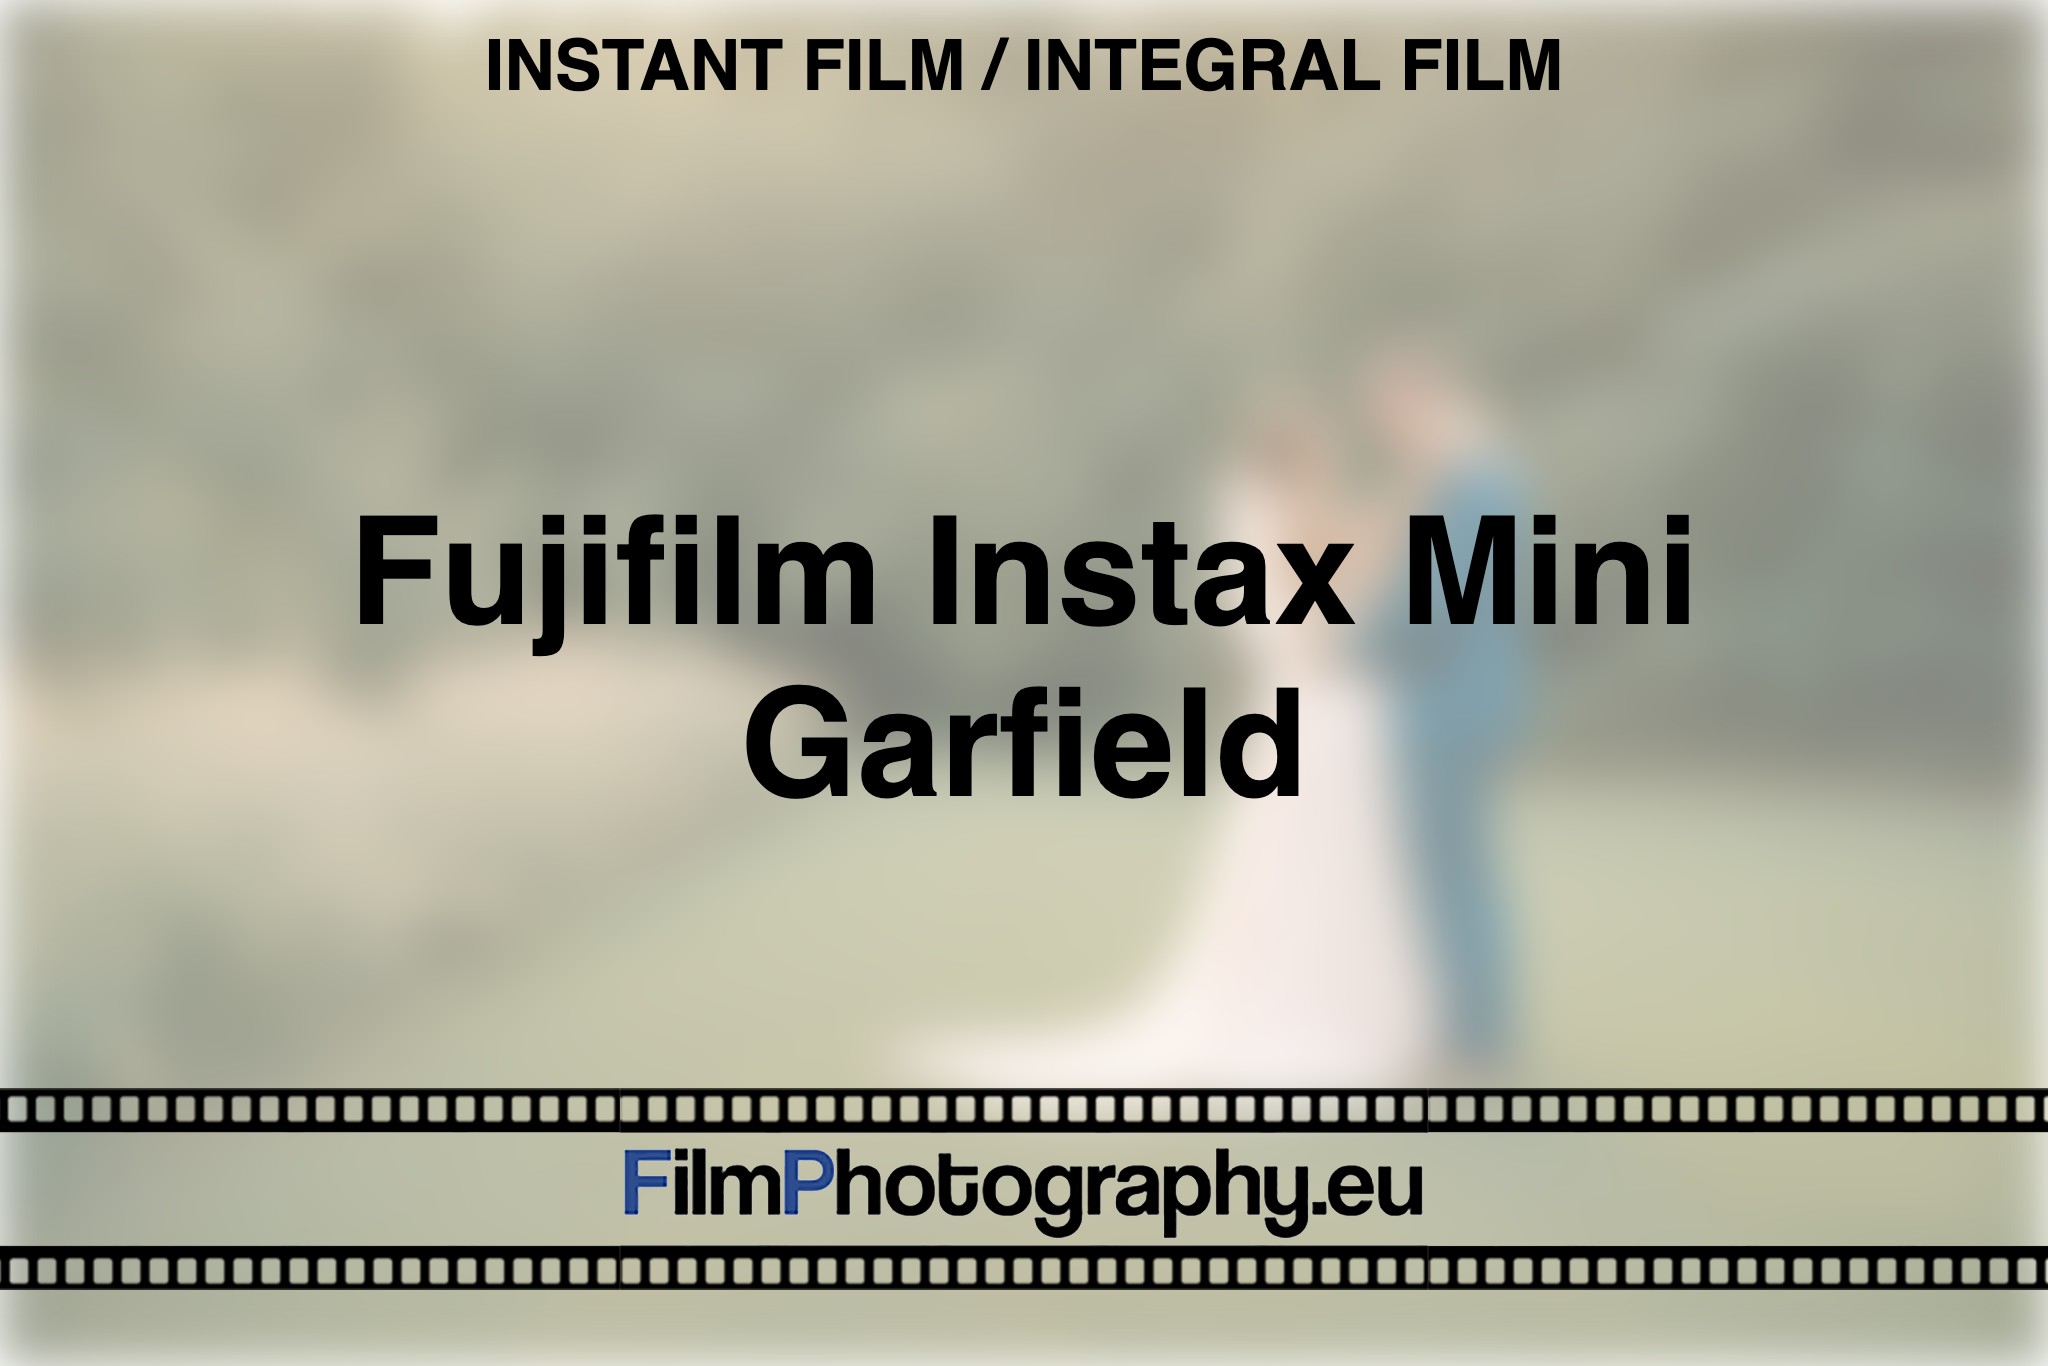 fujifilm-instax-mini-garfield-instant-film-integral-film-bnv